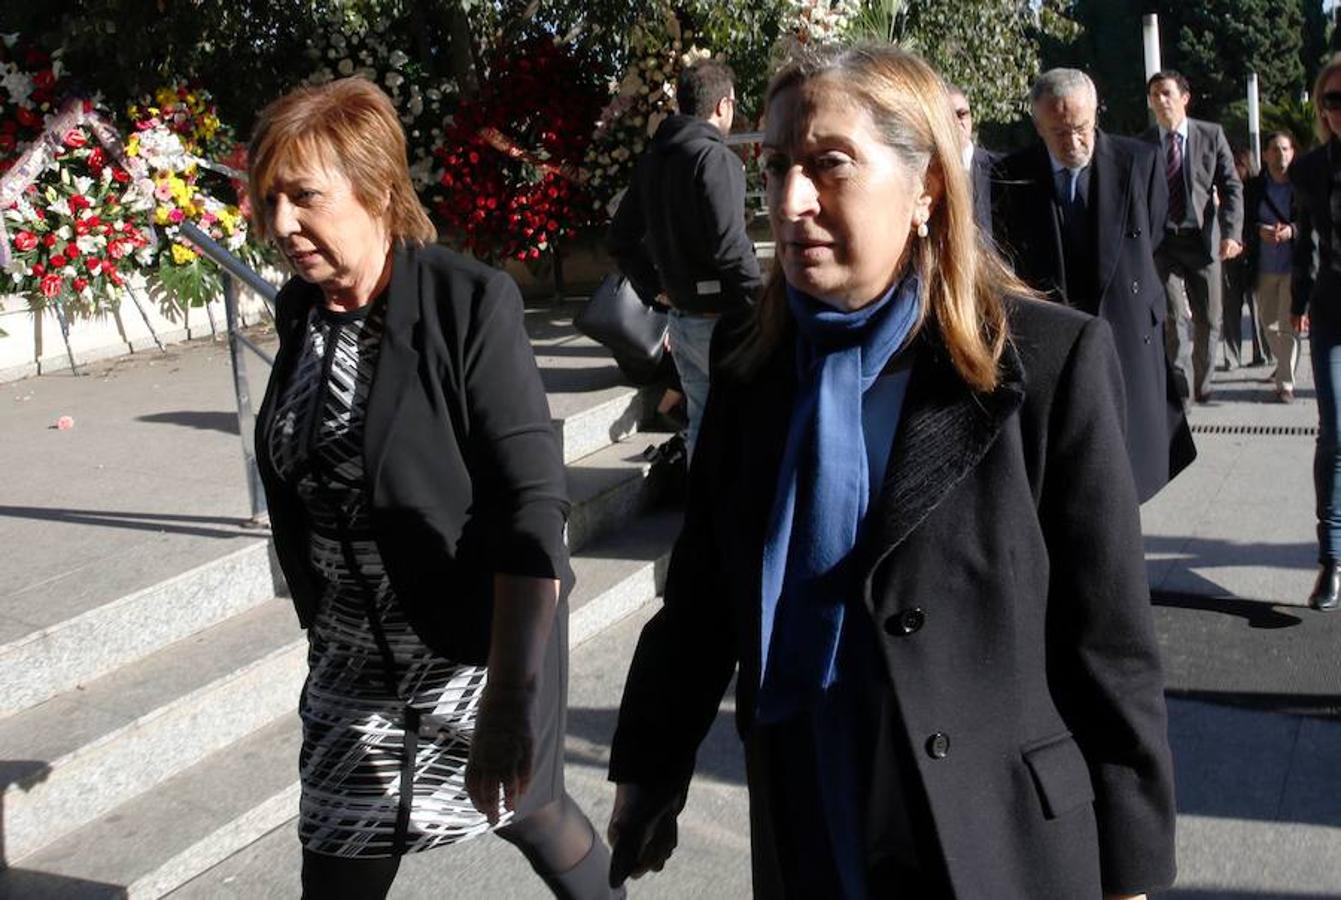 Celia Villalobos y Ana Pastor, presidenta del Congreso de los Diputados, llegan al tanatorio para dar el último adiós a Rita Barberá. AFP